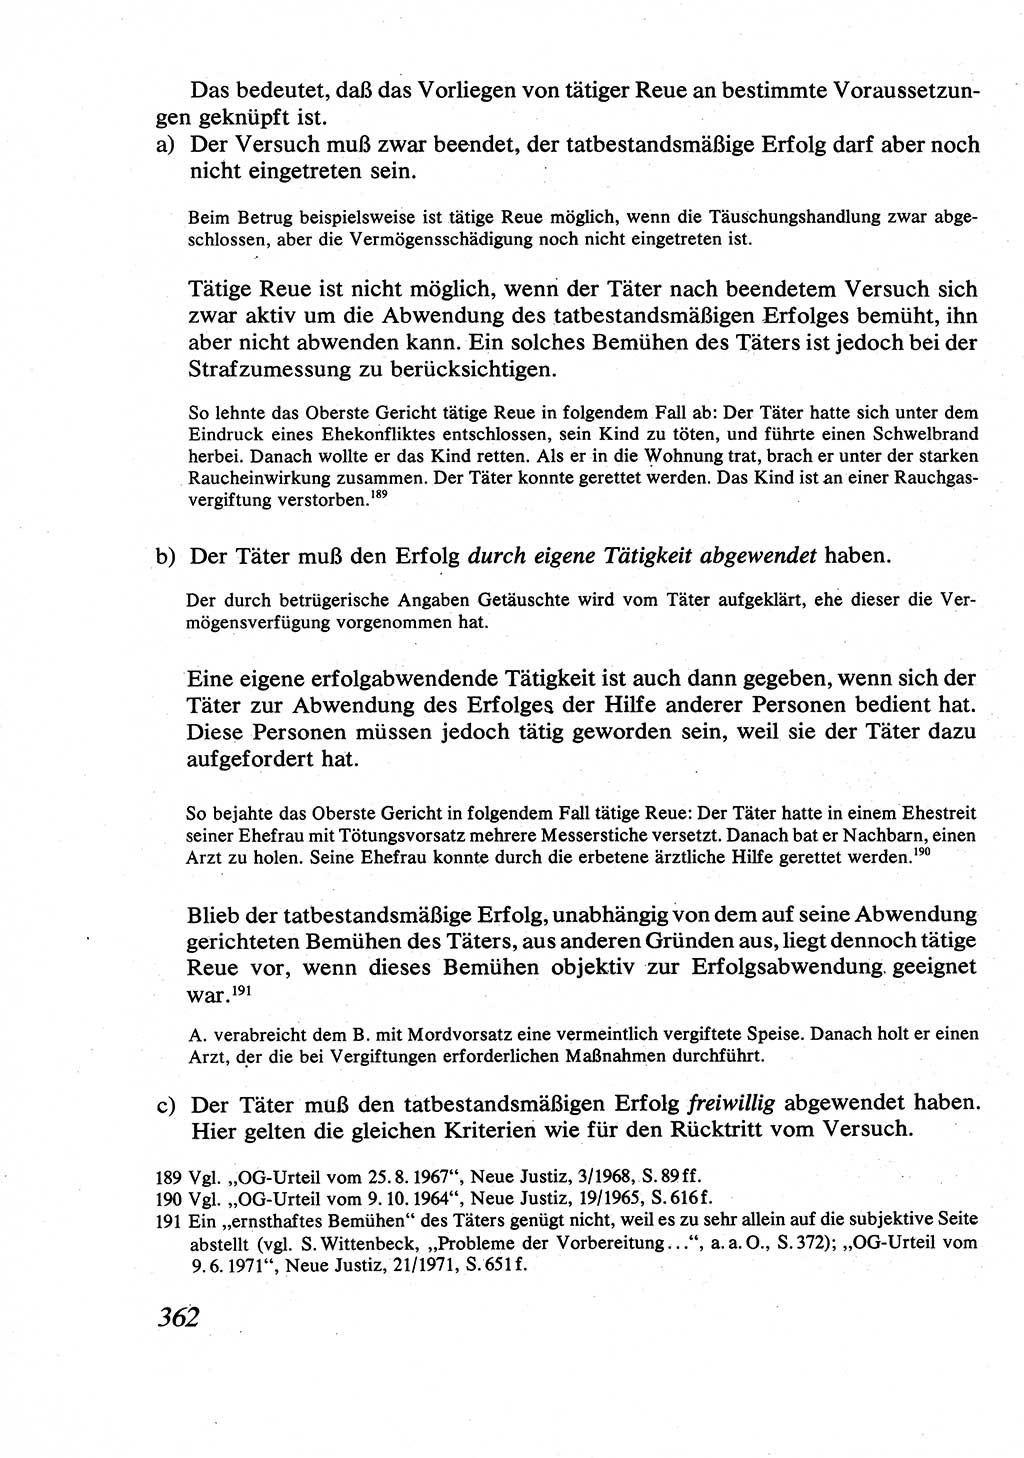 Strafrecht [Deutsche Demokratische Republik (DDR)], Allgemeiner Teil, Lehrbuch 1976, Seite 362 (Strafr. DDR AT Lb. 1976, S. 362)